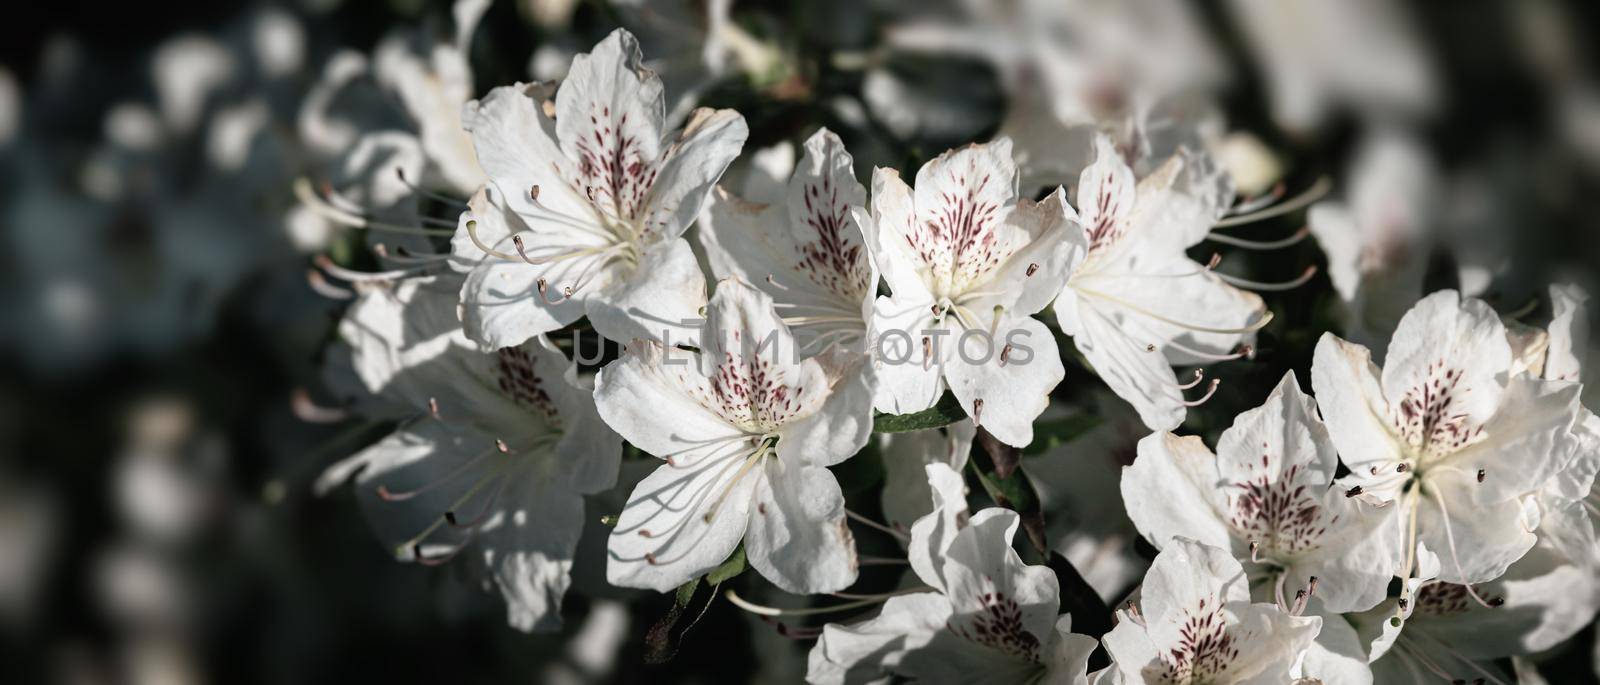 White flowers of azalea by palinchak